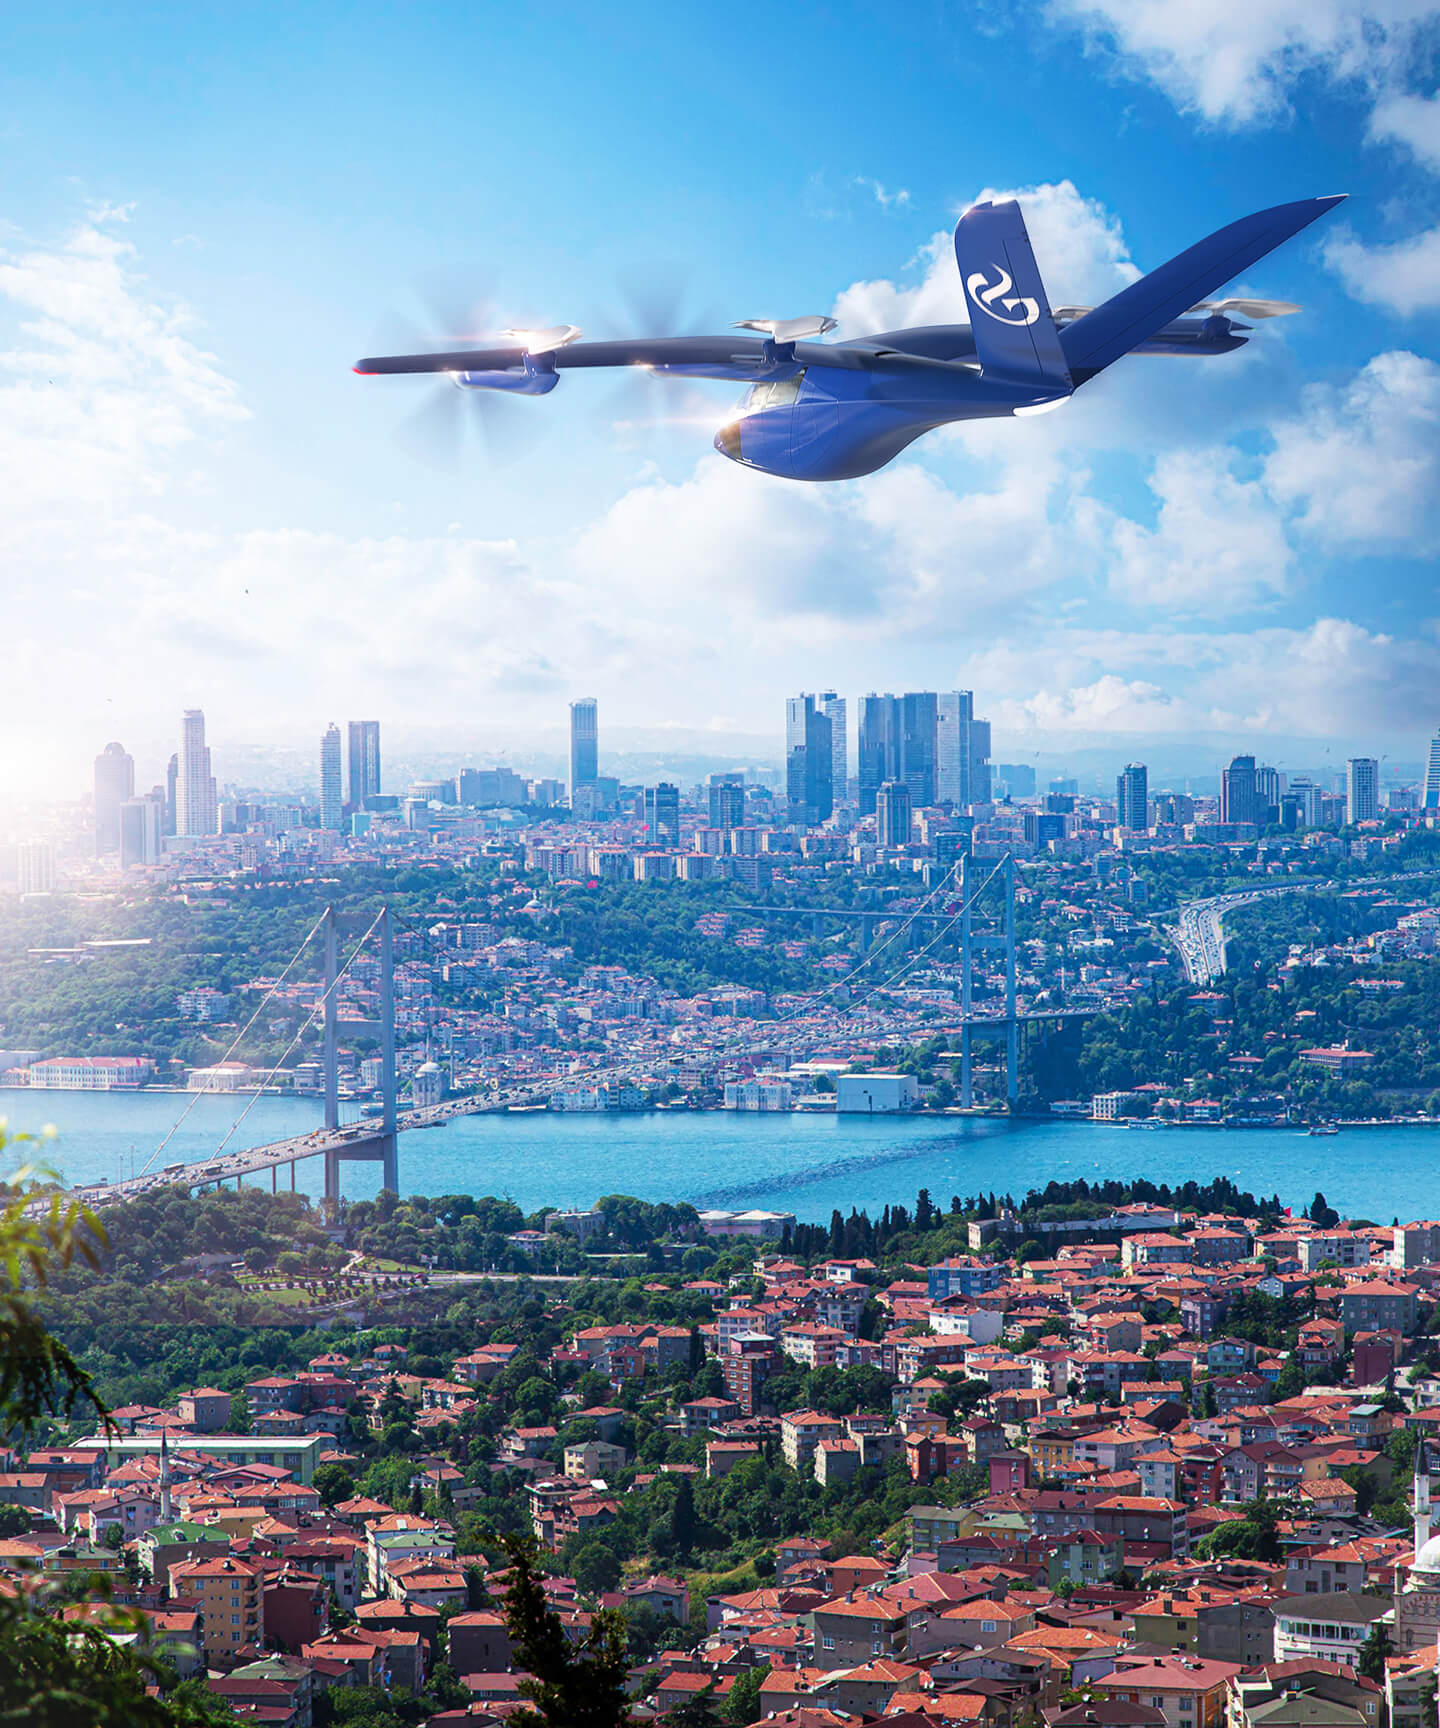 Elektrikli araçlarla havacılıkta yeni bir sayfa açılırken, Gözen Holding, Türkiye ve bölgede öncü olmayı hedefliyor.